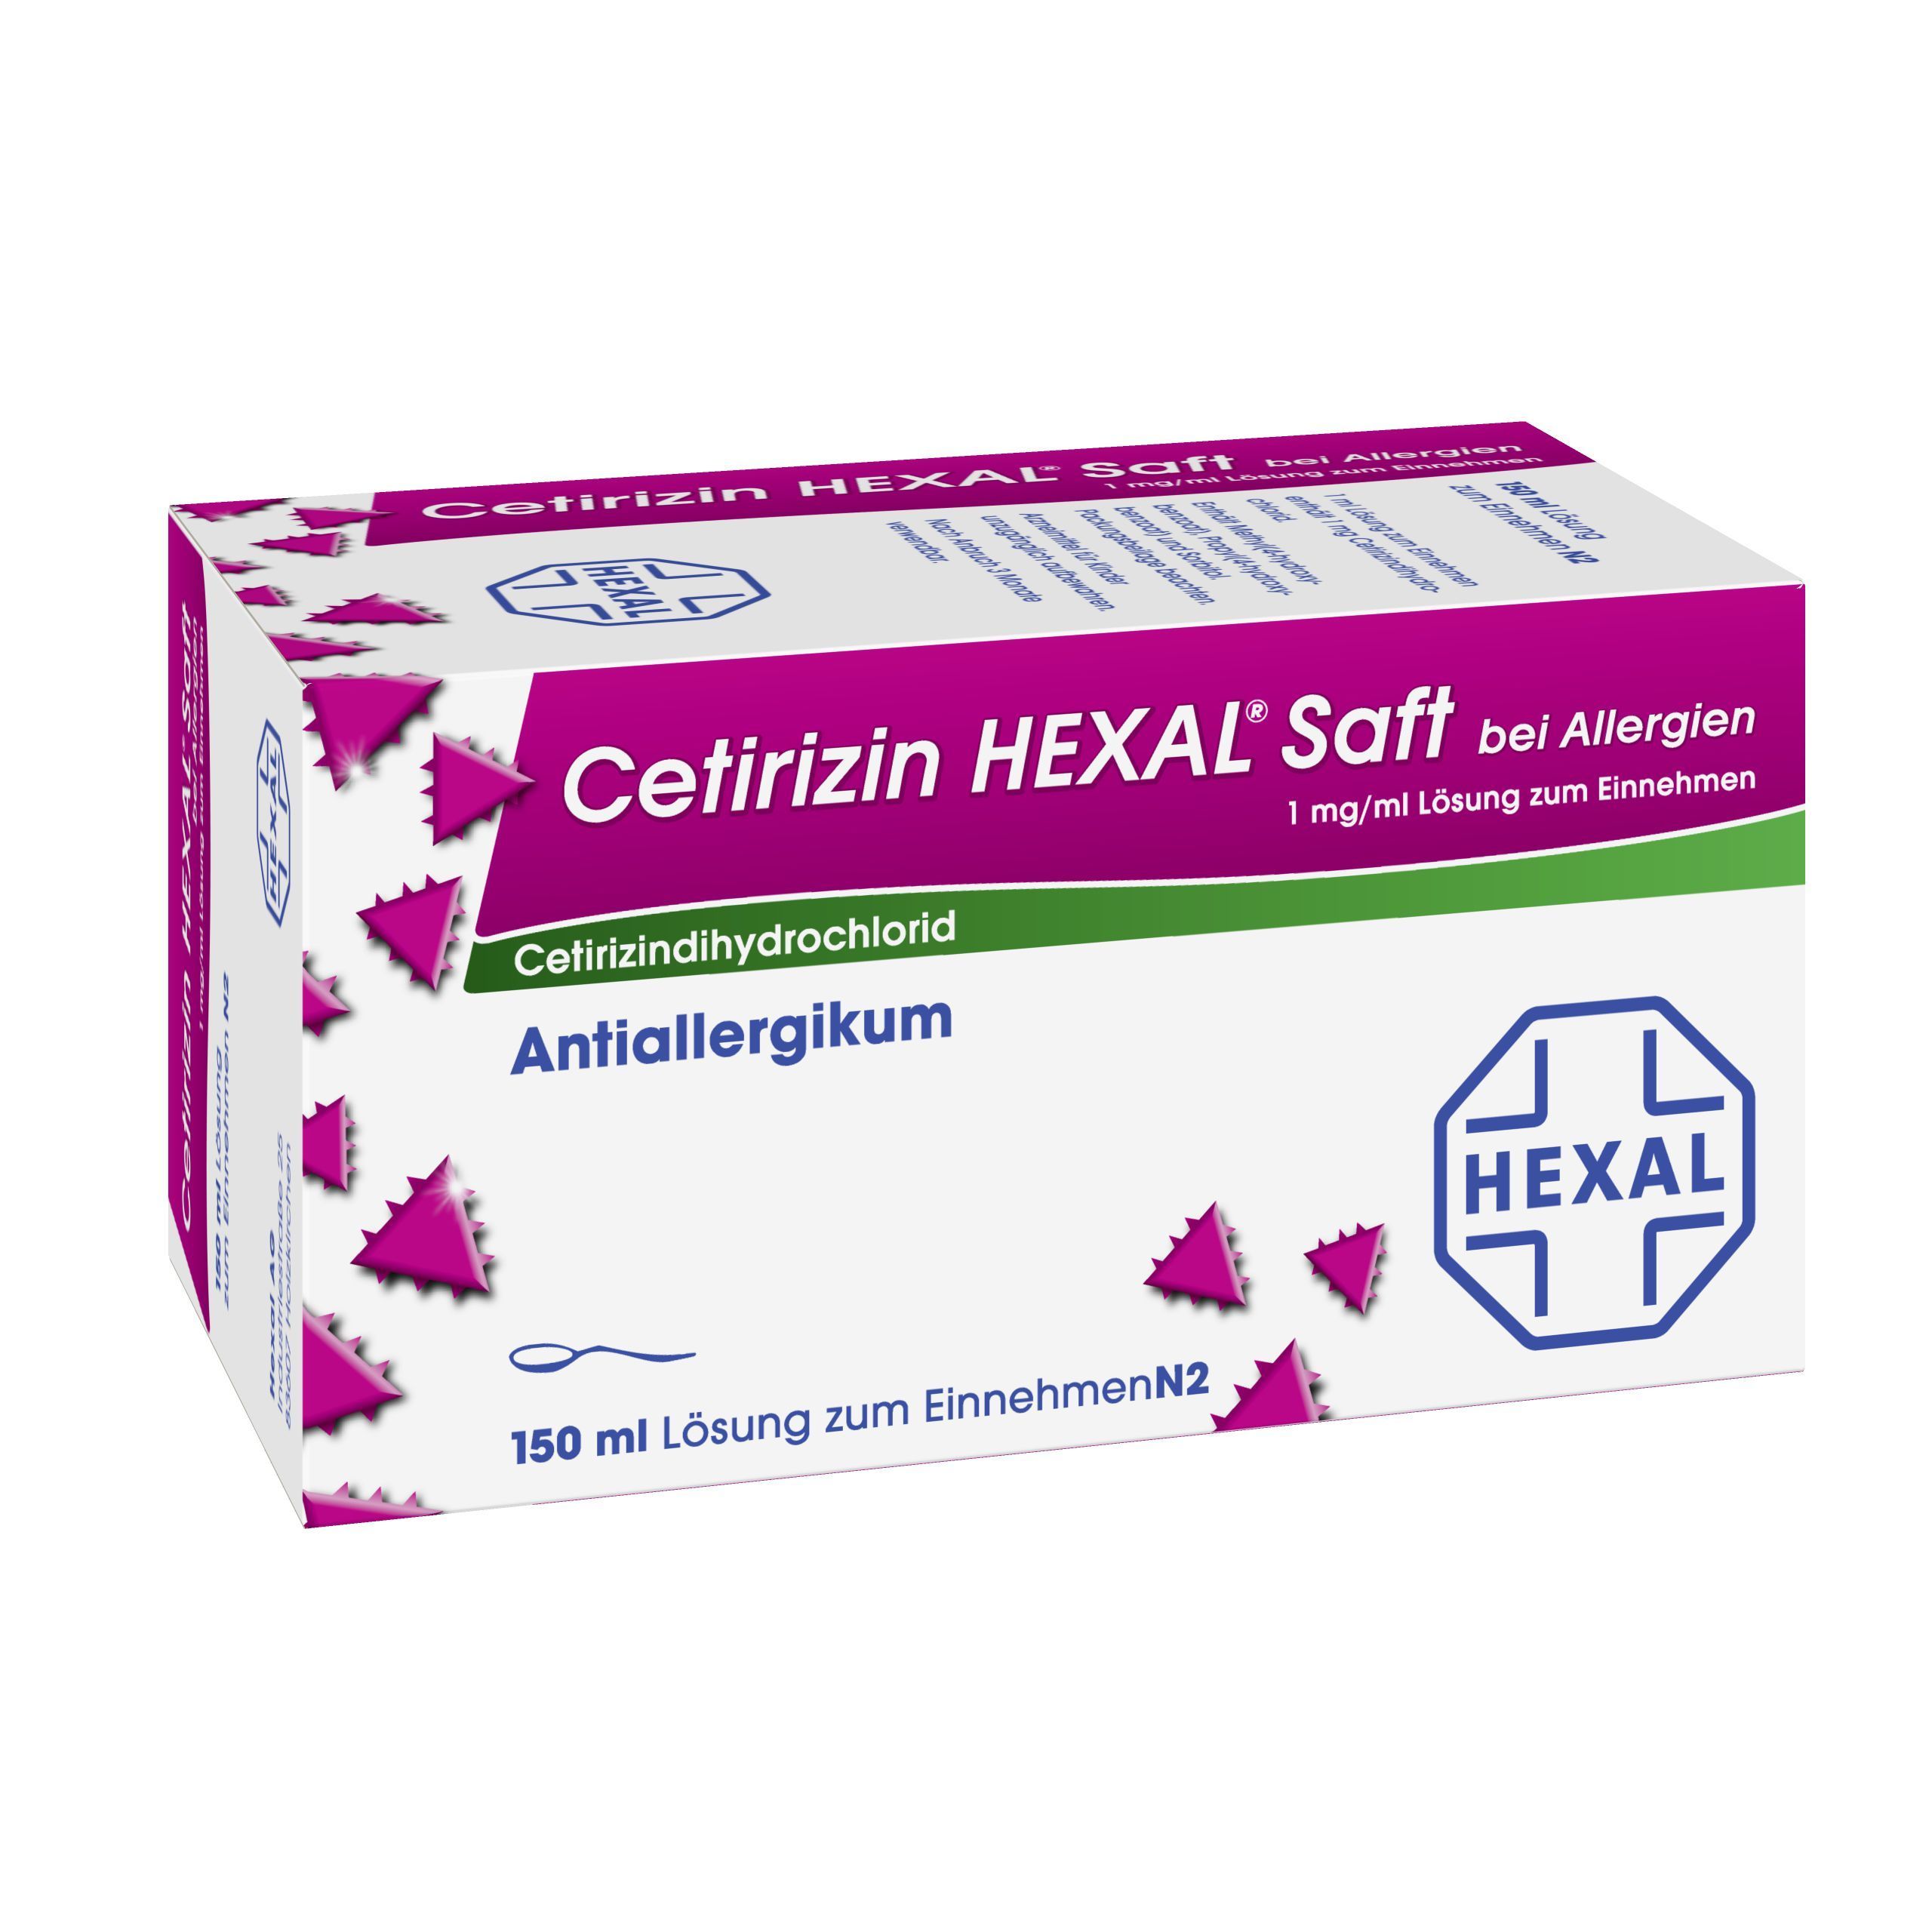 Cetirizin HEXAL® Saft bei Allergien 1 mg/ml